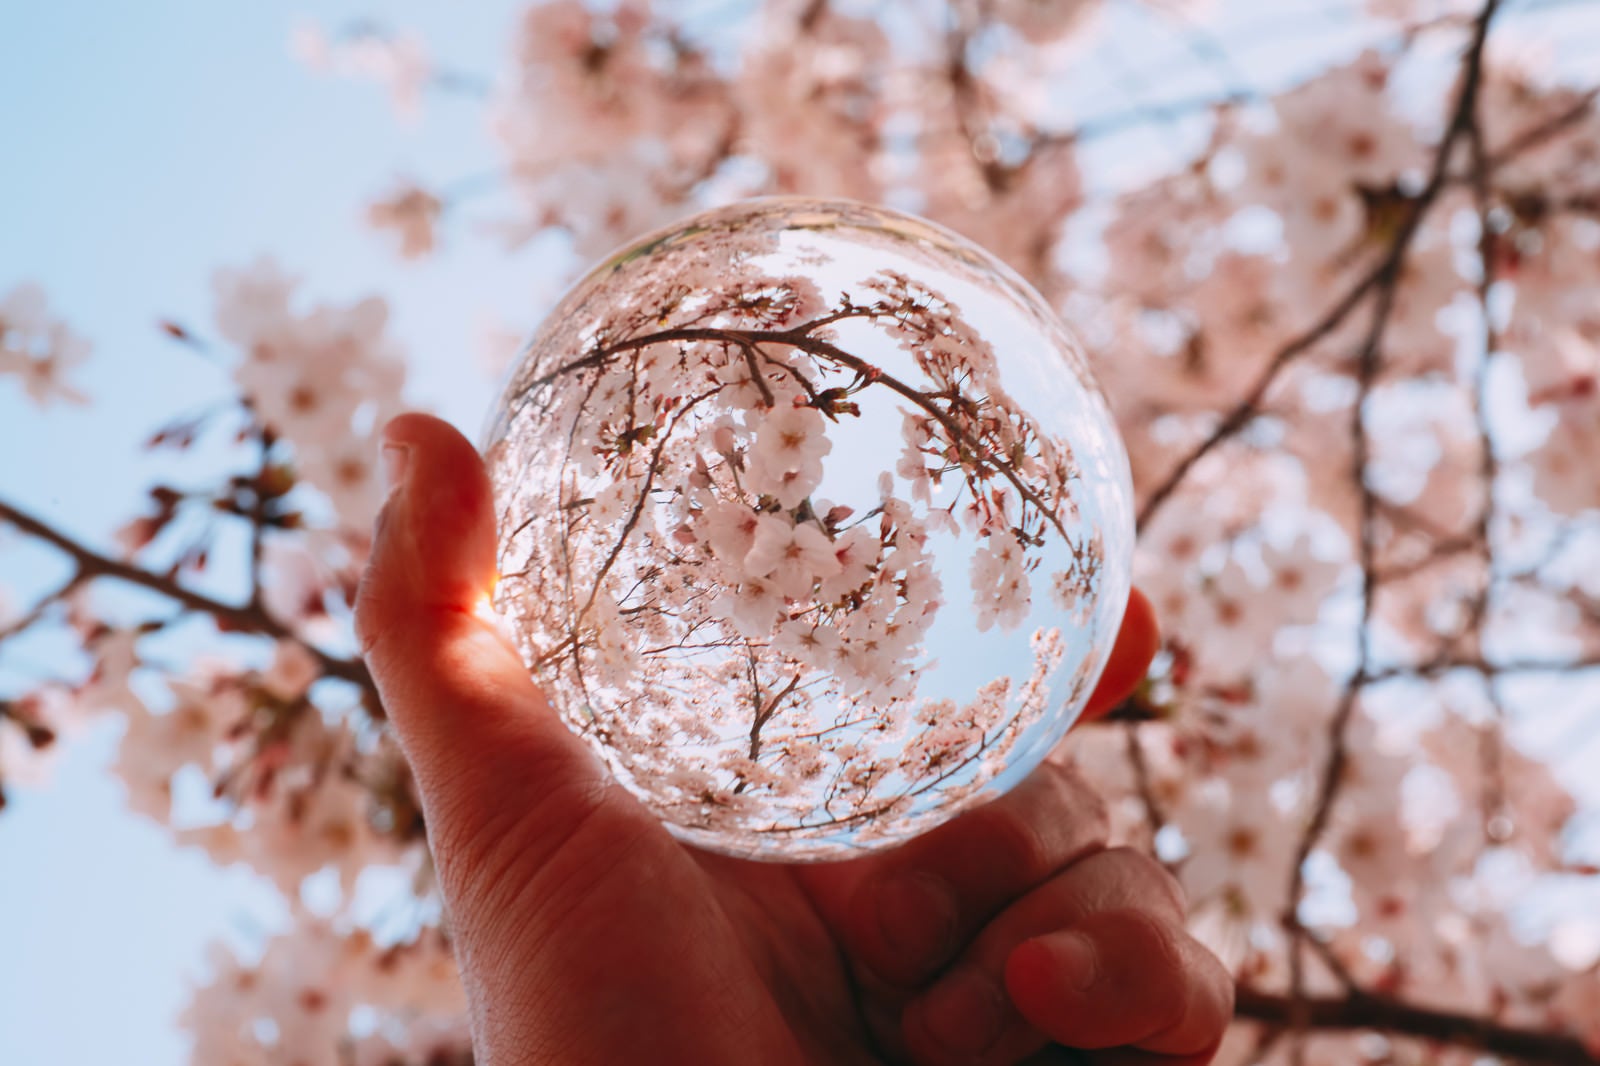 「水晶玉越しに見上げた満開の桜」の写真